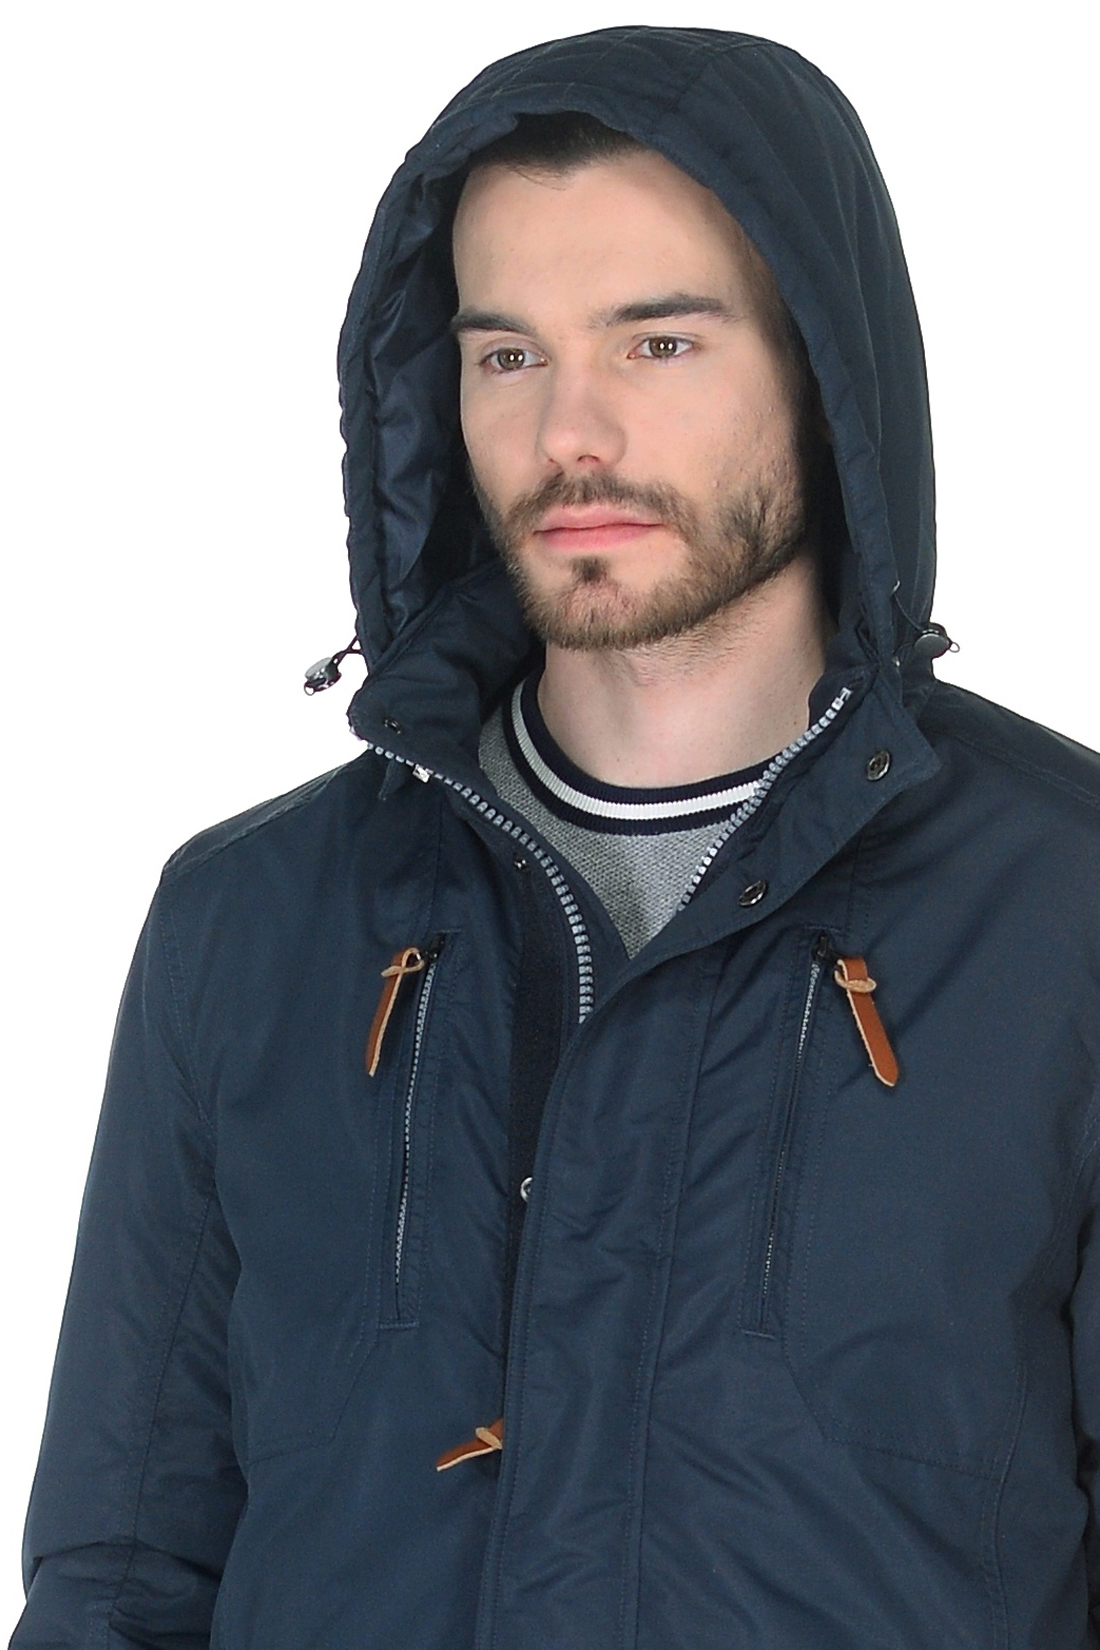 Куртка с отделкой из кожи (арт. baon B538022), размер S, цвет синий Куртка с отделкой из кожи (арт. baon B538022) - фото 4